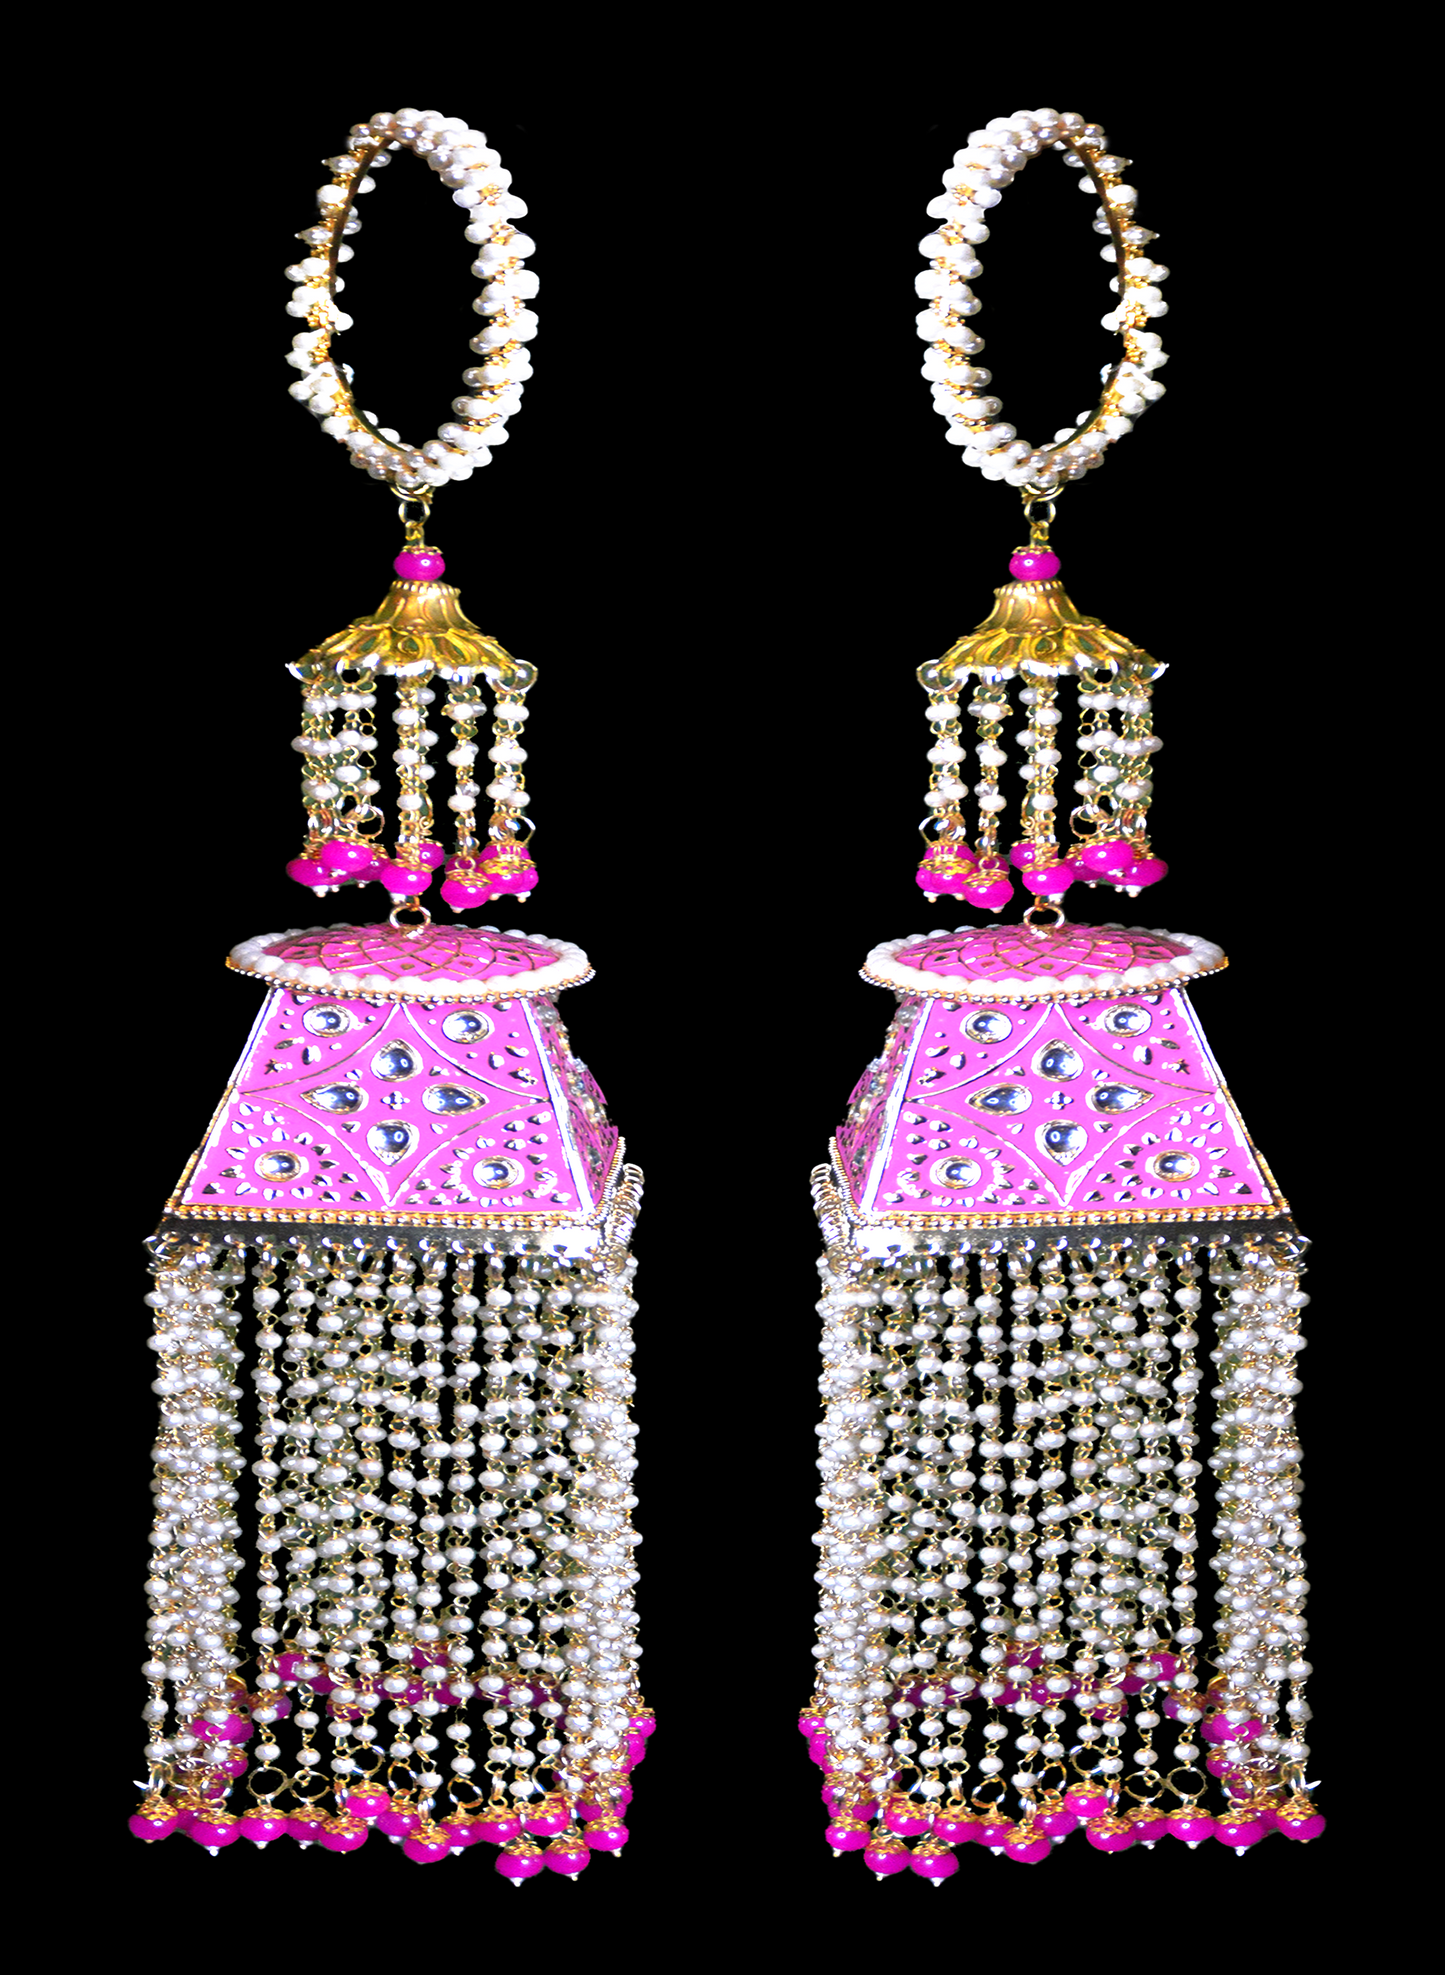 Pink Meenakari Kaleera bangle for brides with Pearls